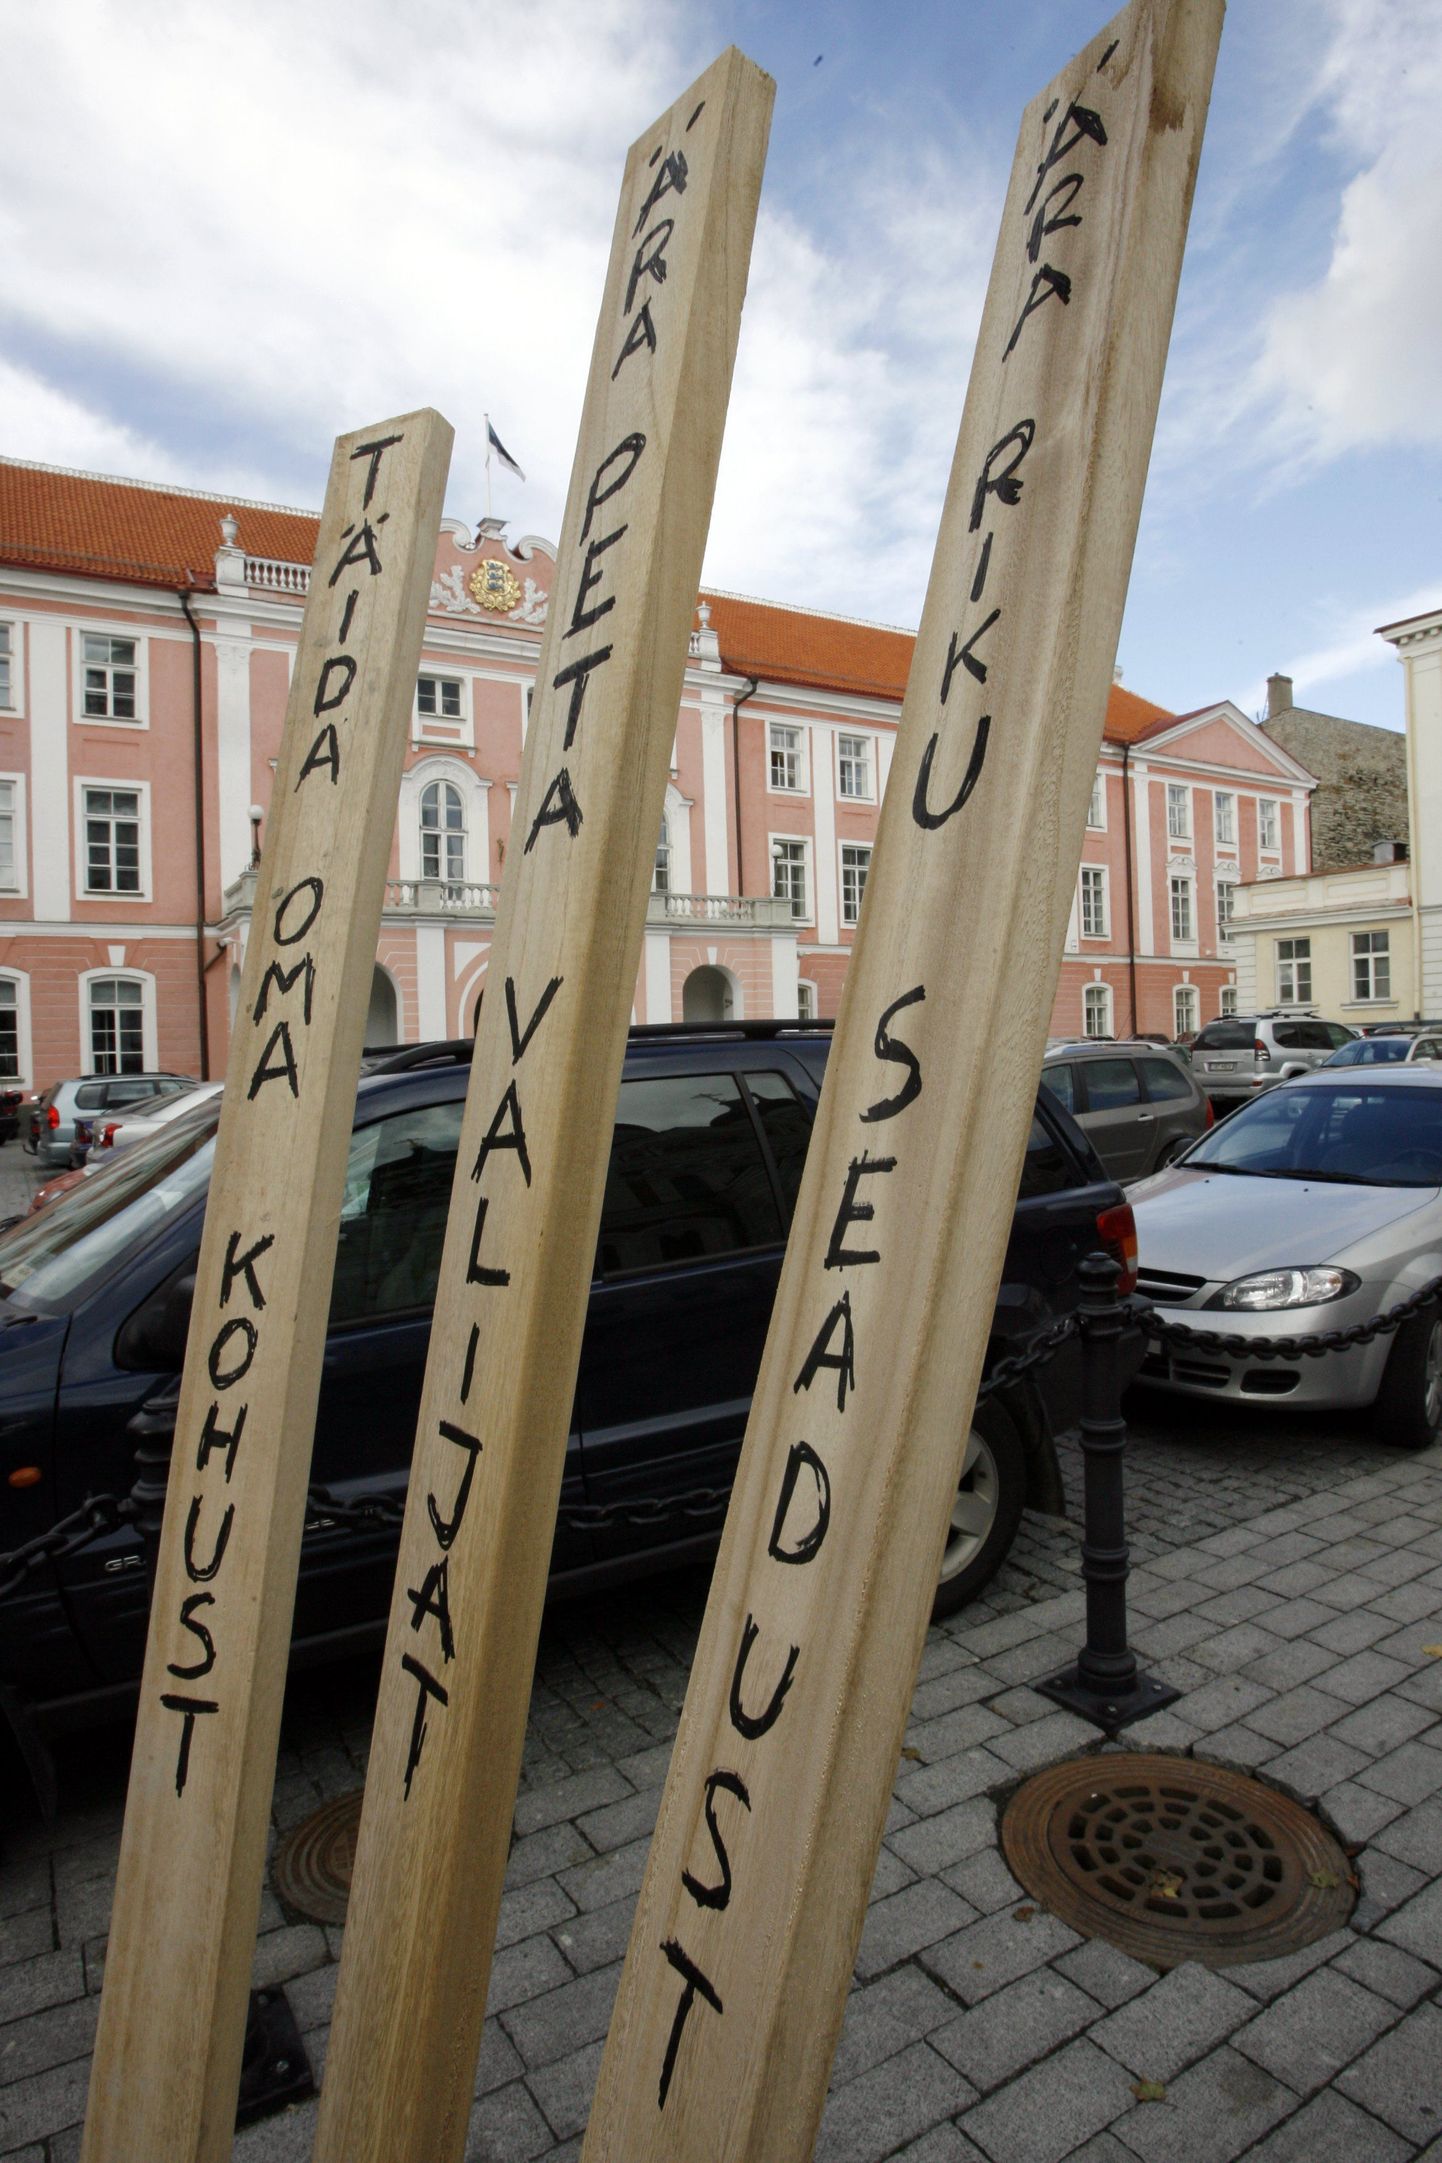 Pildil on 2006. aastal riigikogus toimunud presidendi valimiste eel Toompeal väljas olnud installatsioon.